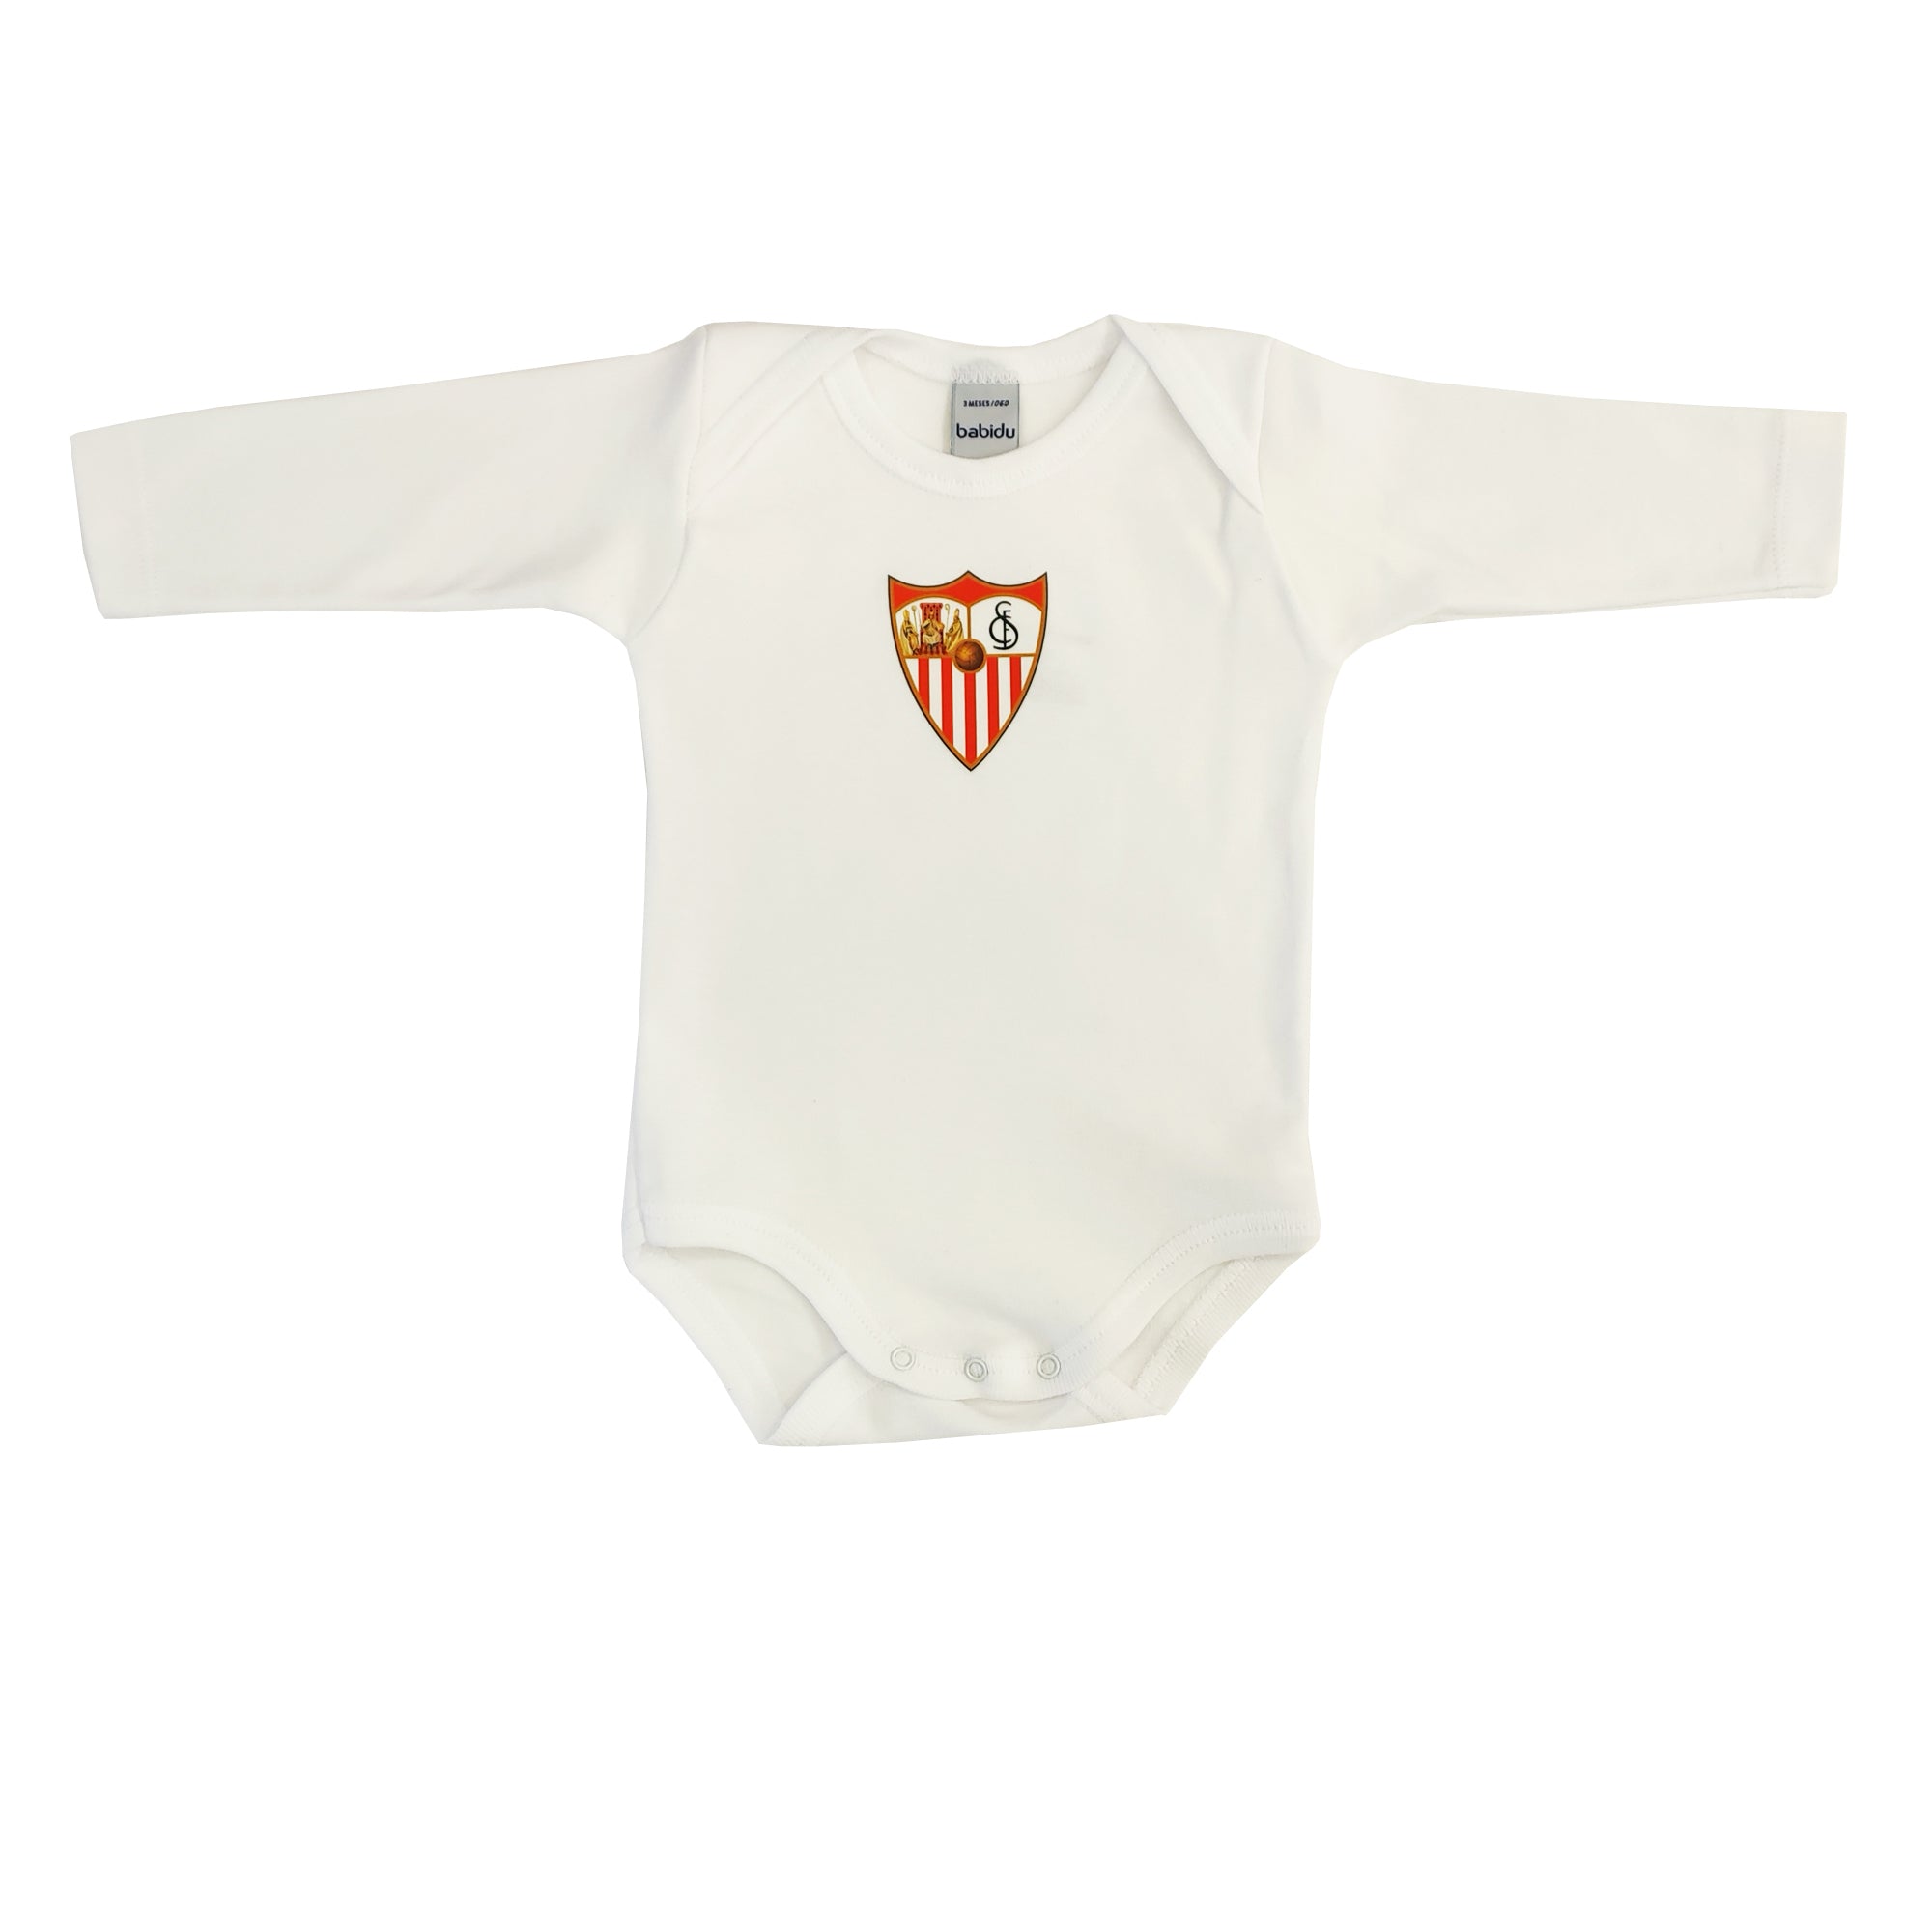 Body blanco para bebés con escudo